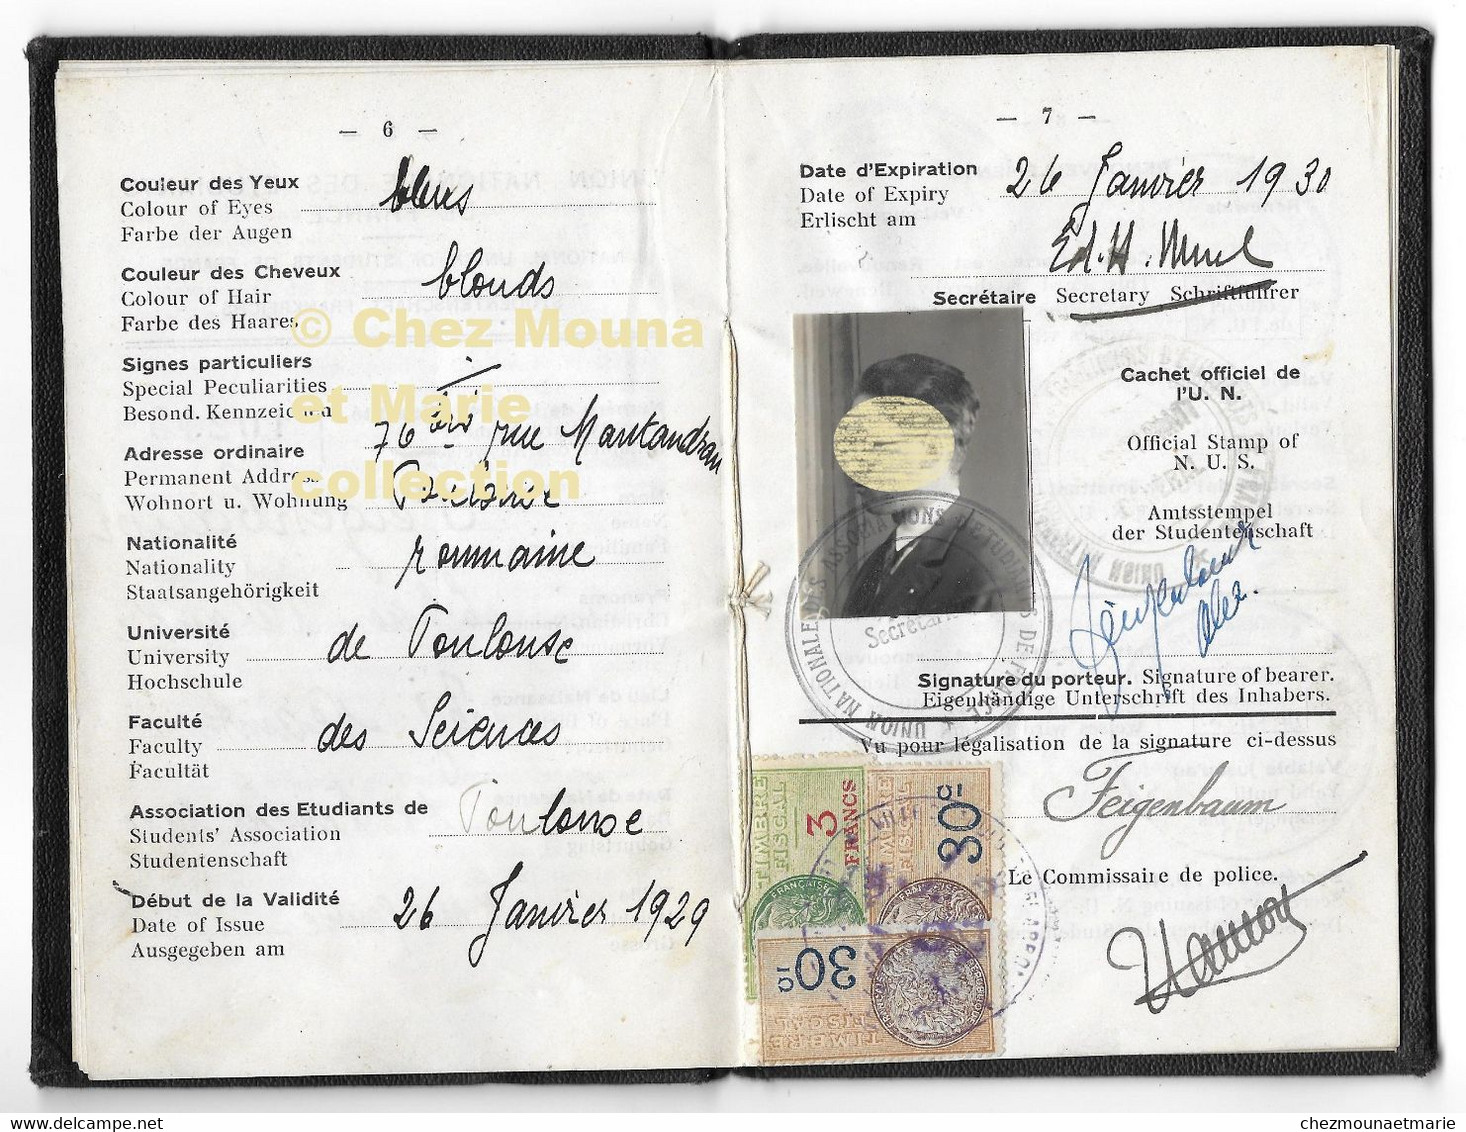 1929 CARTE D IDENTITE D ETUDIANT A TOULOUSE SCIENCE FEIGENBAUM ELIAS ALEXANDRE NE EN 1910 ROUMANIE - Documentos Históricos